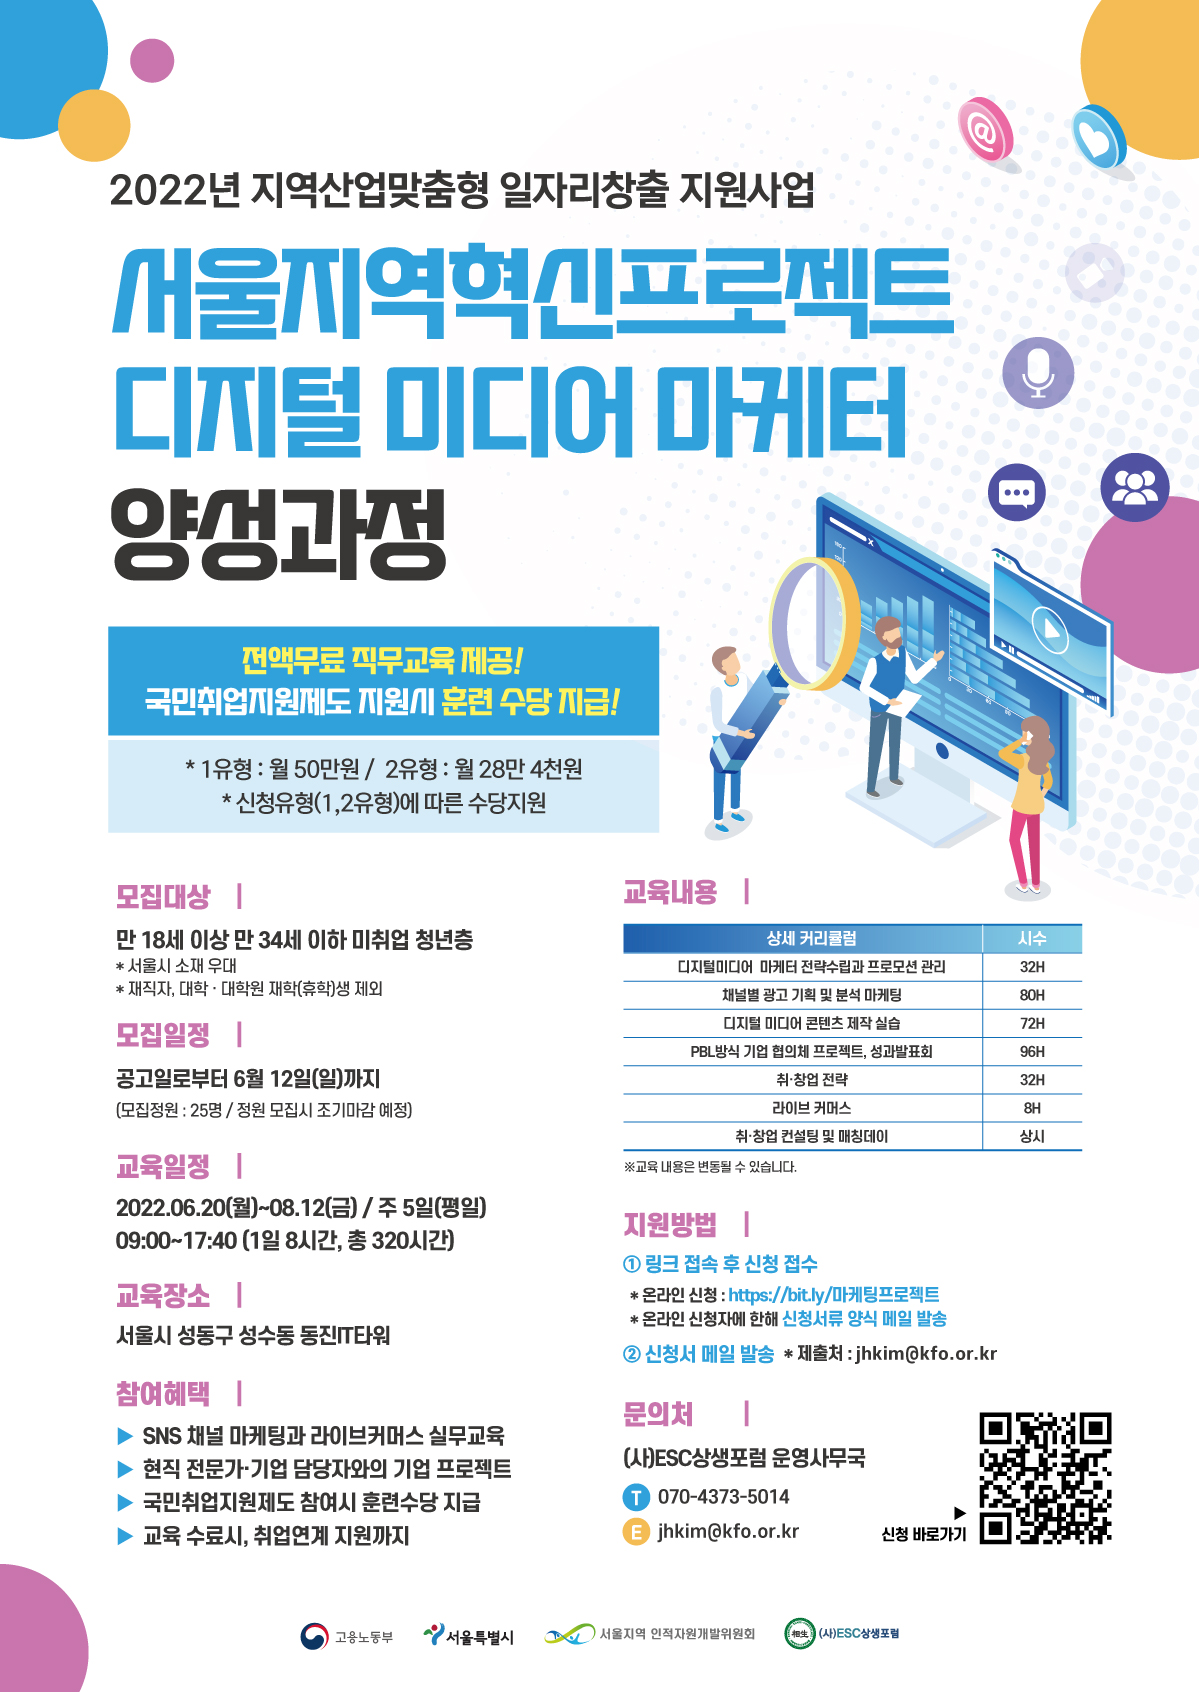 [고용노동부] 서울지역혁신프로젝트 "디지털 미디어 마케터 취업연계 과정"